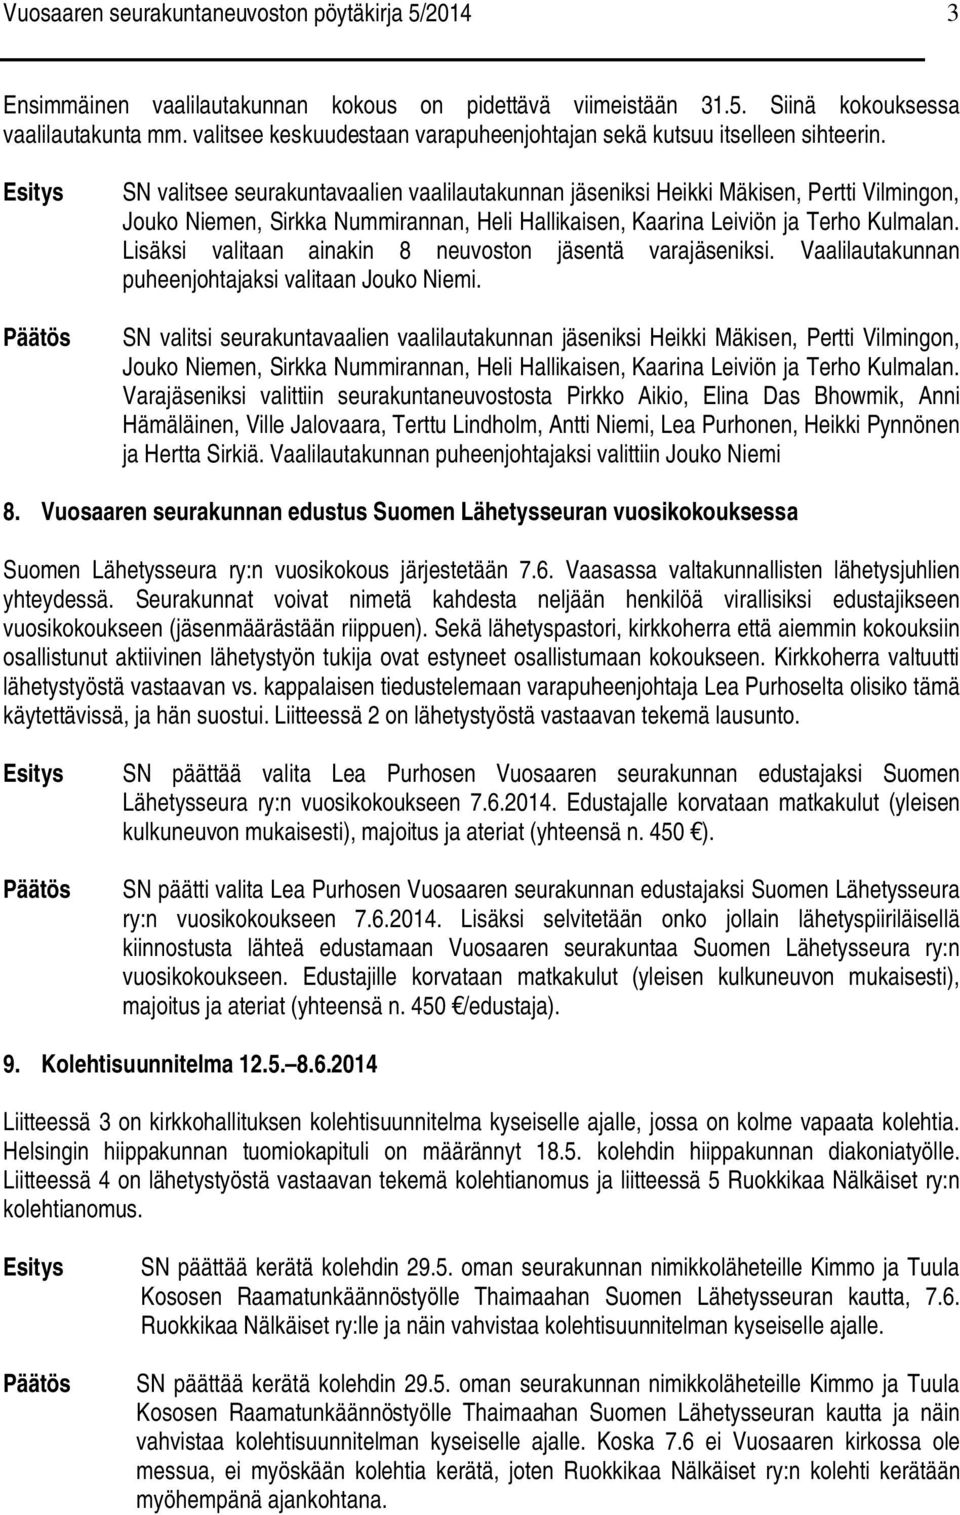 SN valitsee seurakuntavaalien vaalilautakunnan jäseniksi Heikki Mäkisen, Pertti Vilmingon, Jouko Niemen, Sirkka Nummirannan, Heli Hallikaisen, Kaarina Leiviön ja Terho Kulmalan.